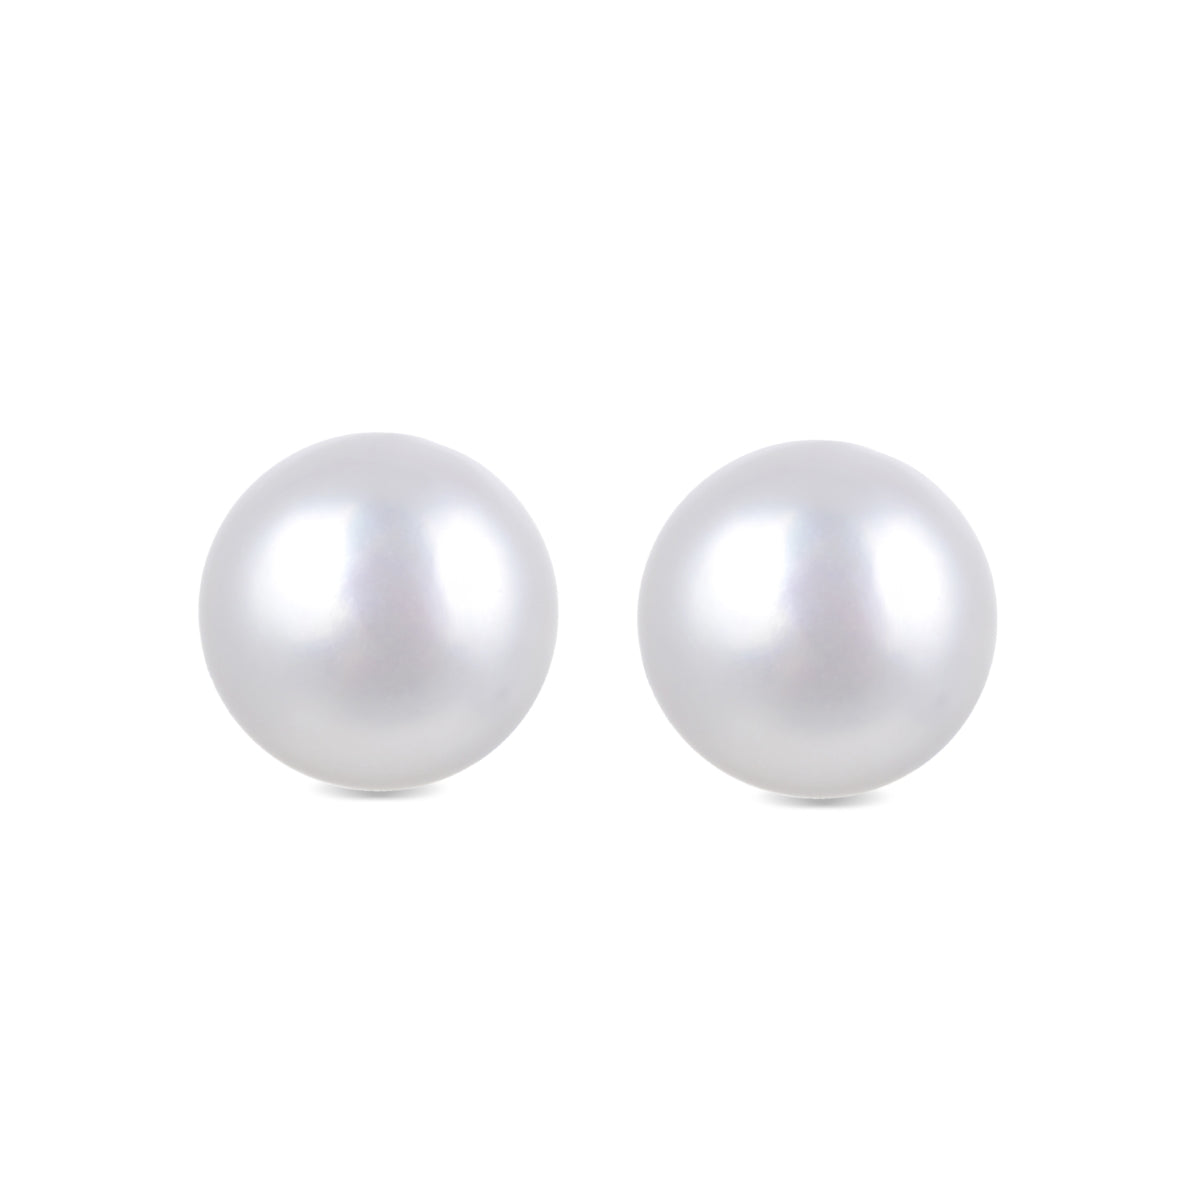 Basic 925 Sterling Silver Earrings